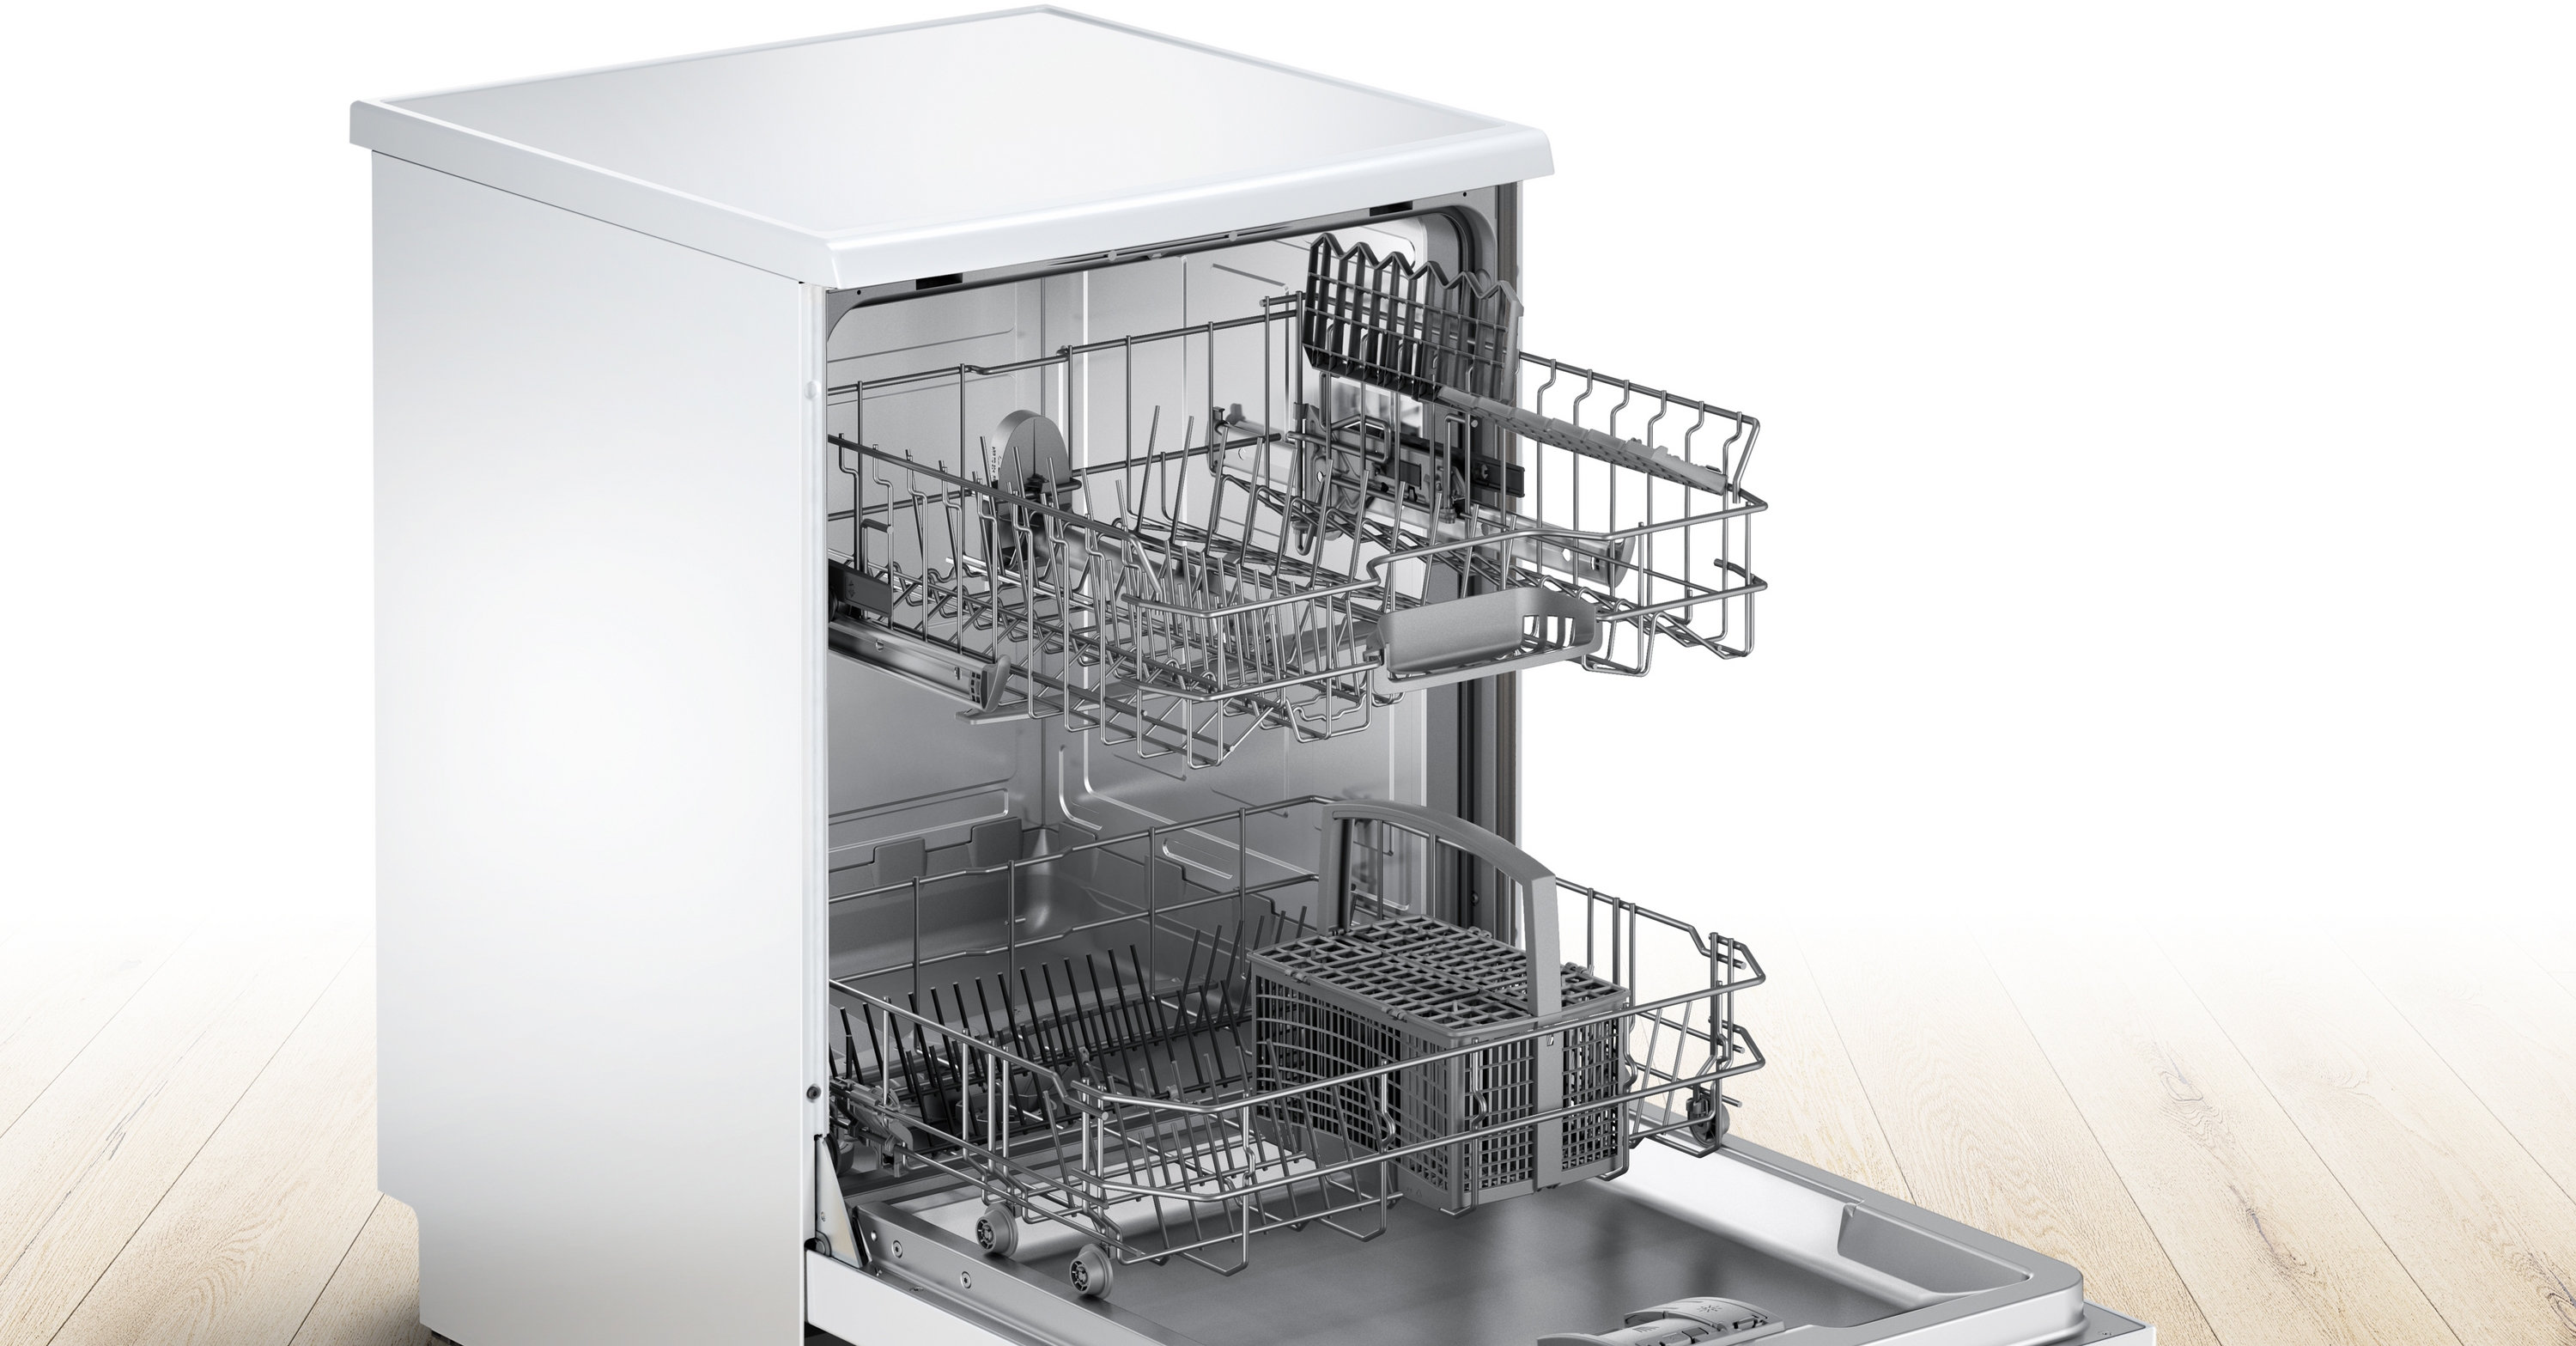 Serija 2, Samostojeća mašina za pranje sudova, 60 cm, Bela, SGS2ITW04E